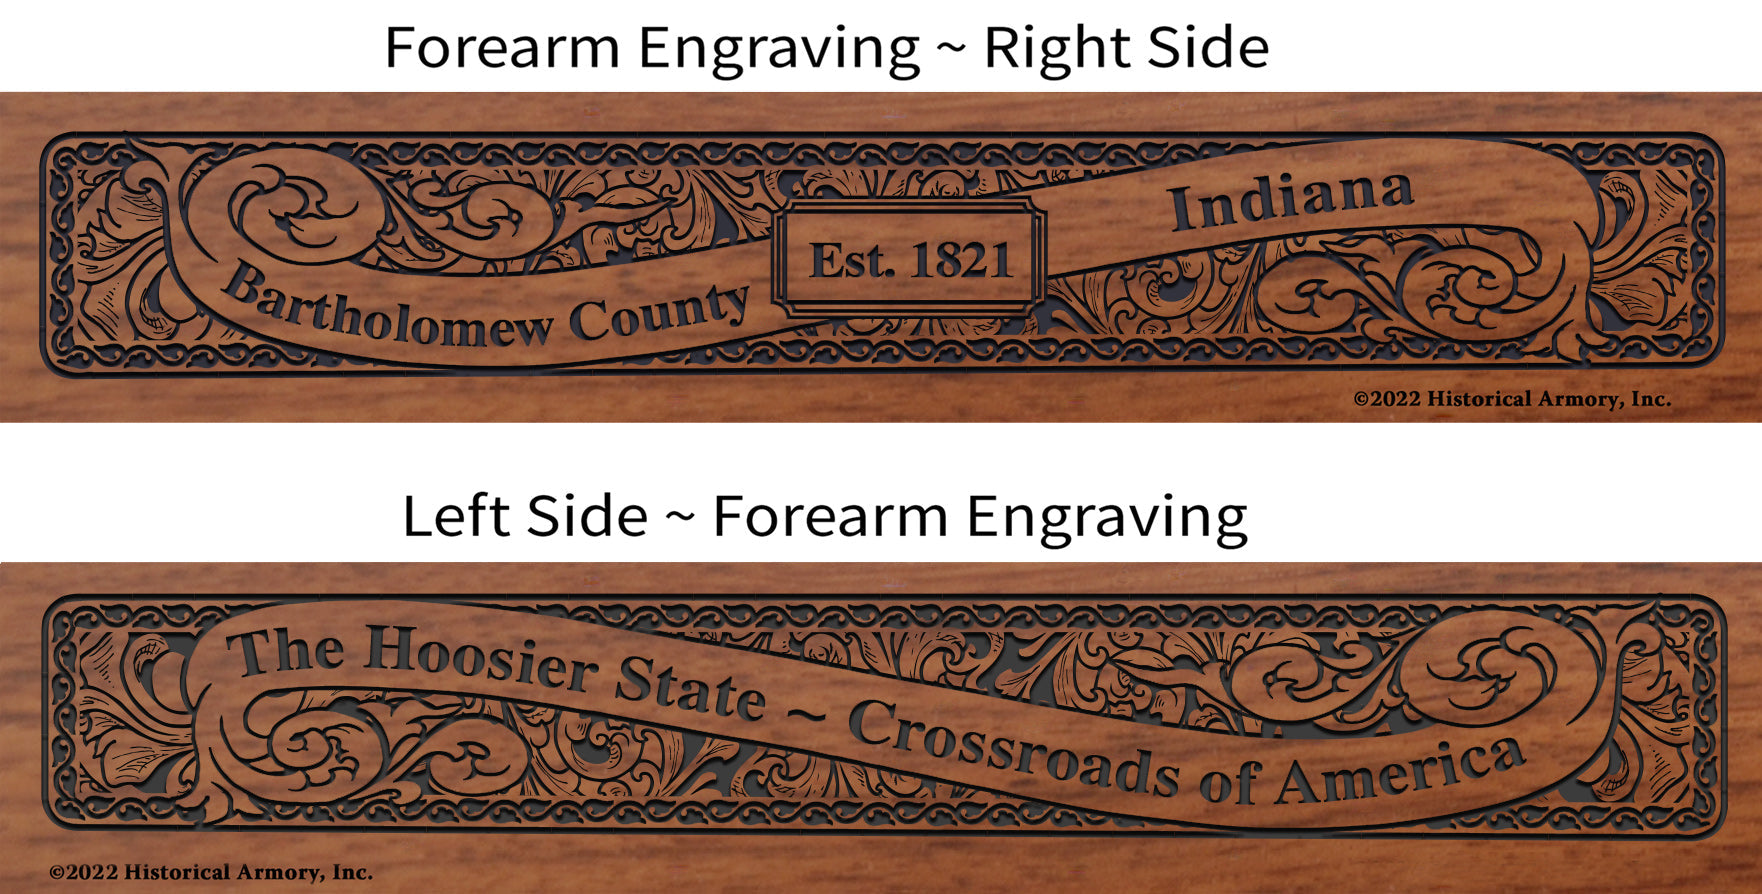 Bartholomew County Indiana Engraved Rifle Forearm